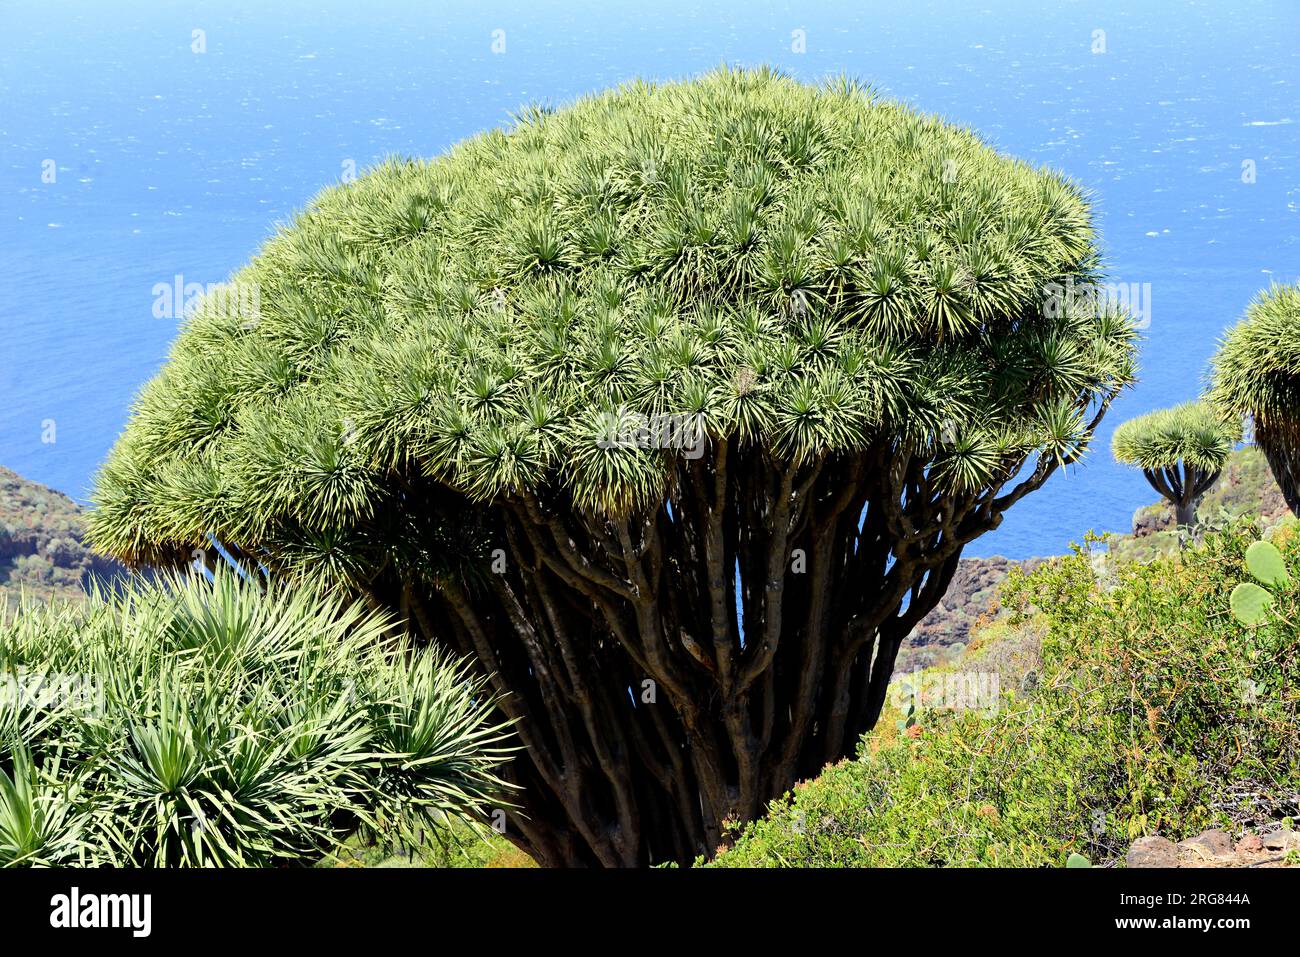 Drago ou dragons des îles Canaries (Dracaena draco) est une plante semblable à un arbre originaire de la région de Macaronésie. Las Tricias, Garafía, l'île de la Palma, Canaries Banque D'Images